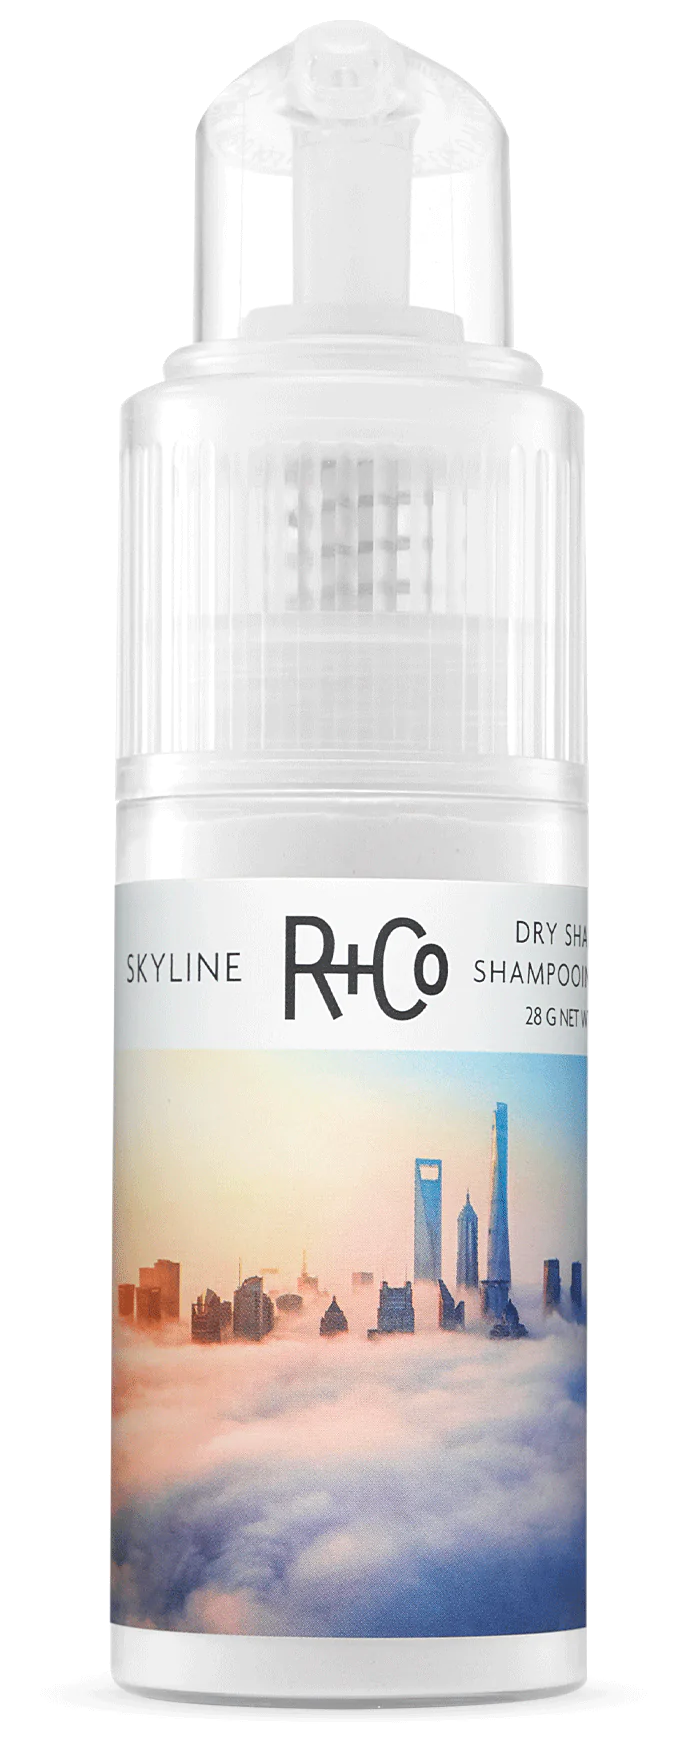 Skyline: Dry Shampoo Powder